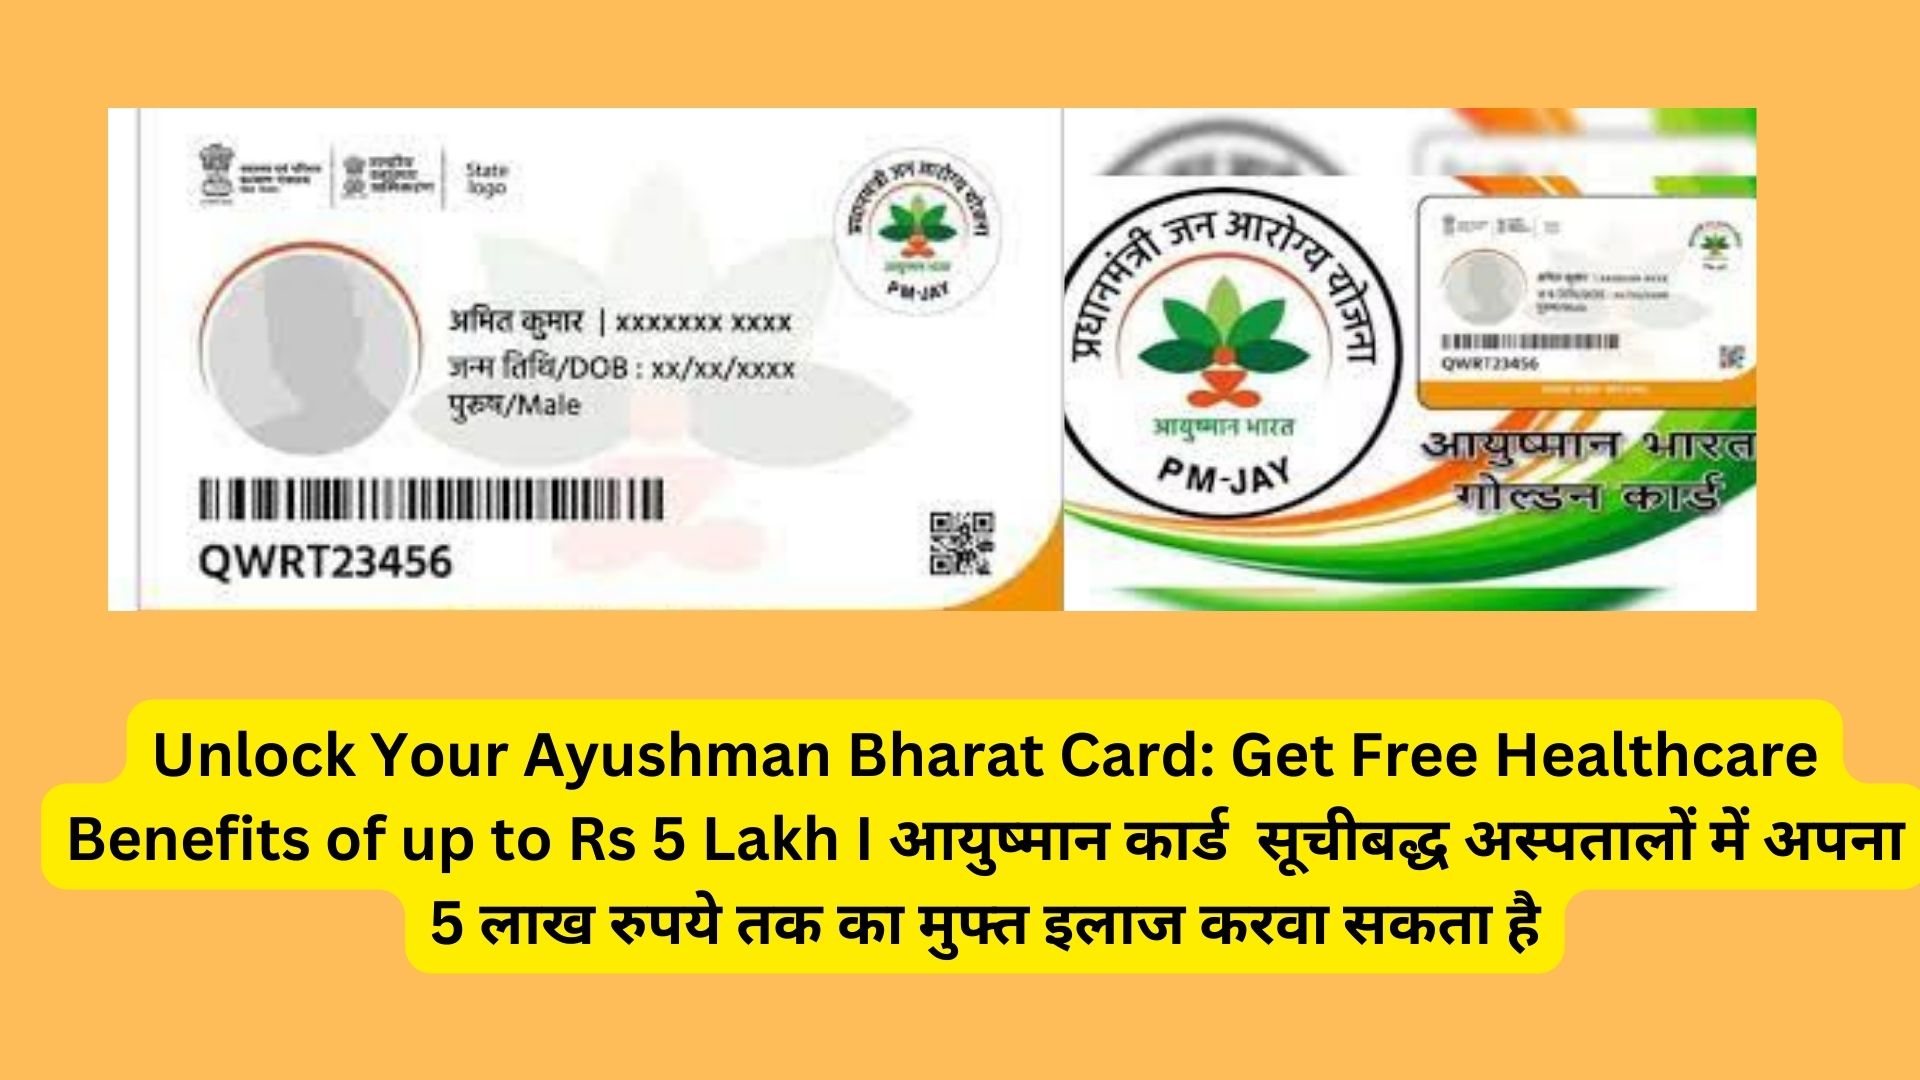 Unlock Your Ayushman Bharat Card: Get Free Healthcare Benefits of up to Rs 5 Lakh I आयुष्मान कार्ड सूचीबद्ध अस्पतालों में अपना 5 लाख रुपये तक का मुफ्त इलाज करवा सकता है